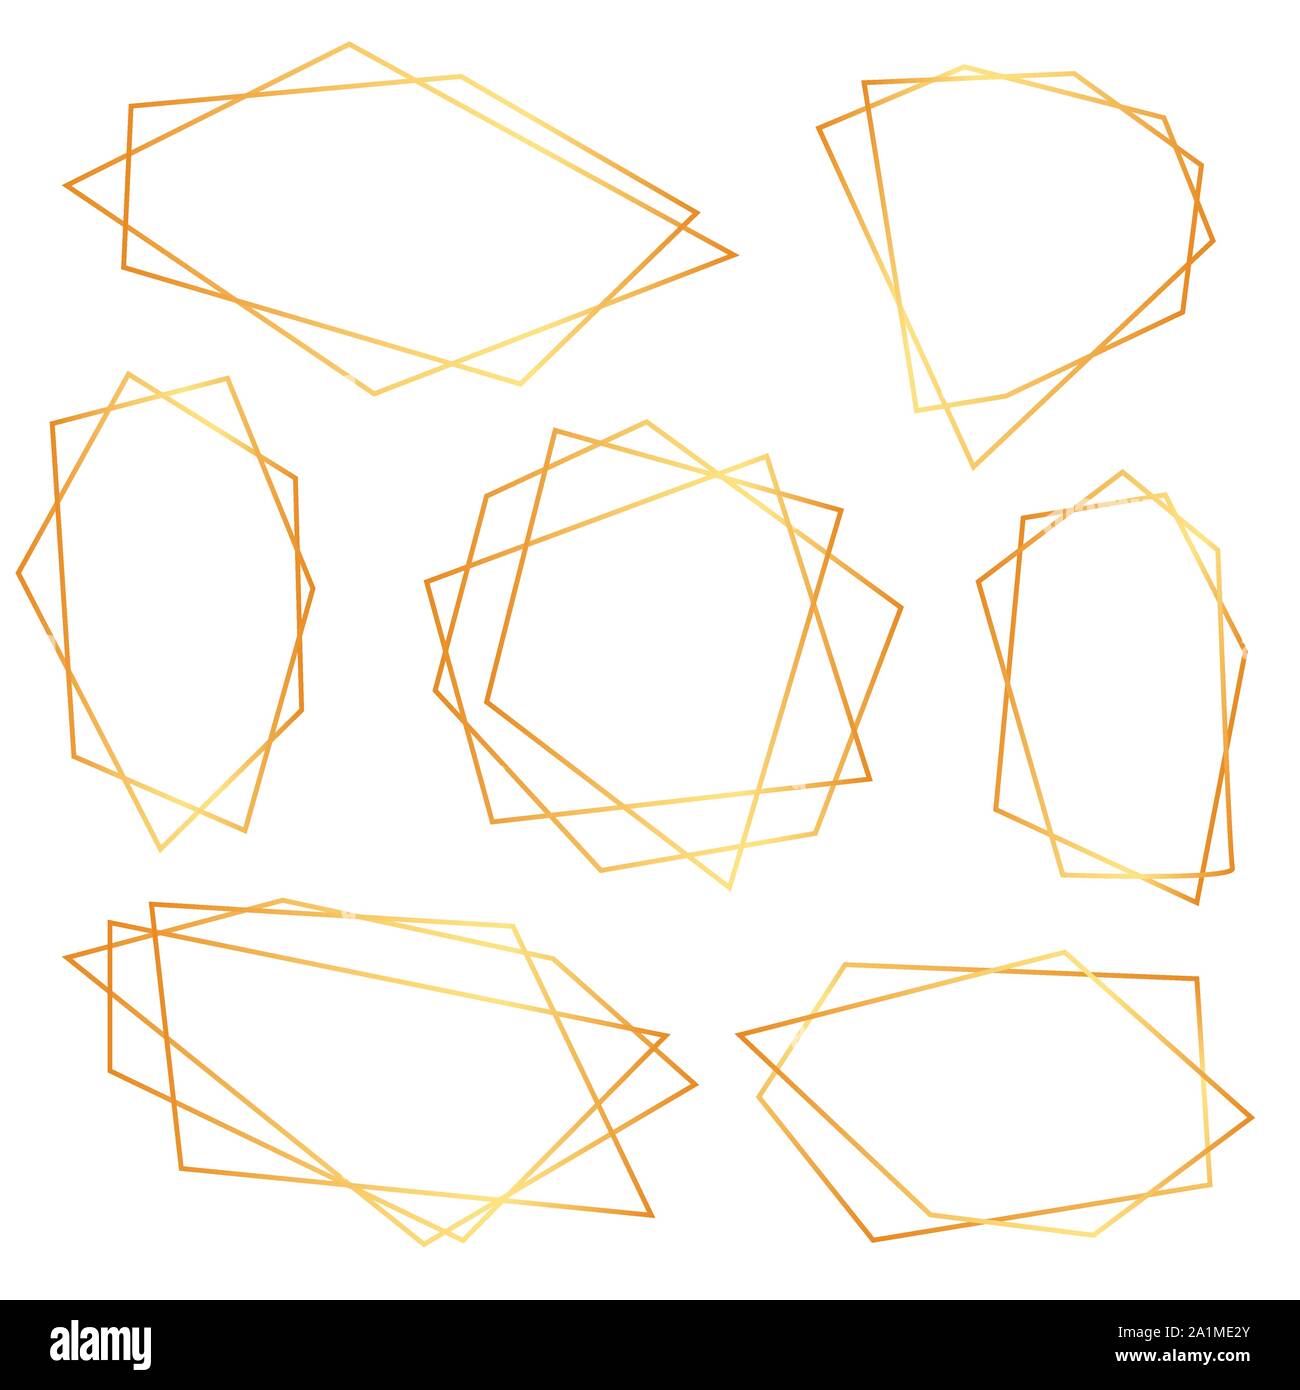 Abstrakte Elemente der geometrischen Polyeder für die hochzeit einladung, Vorlagen, dekorativen Mustern. Vector Illustration Stock Vektor